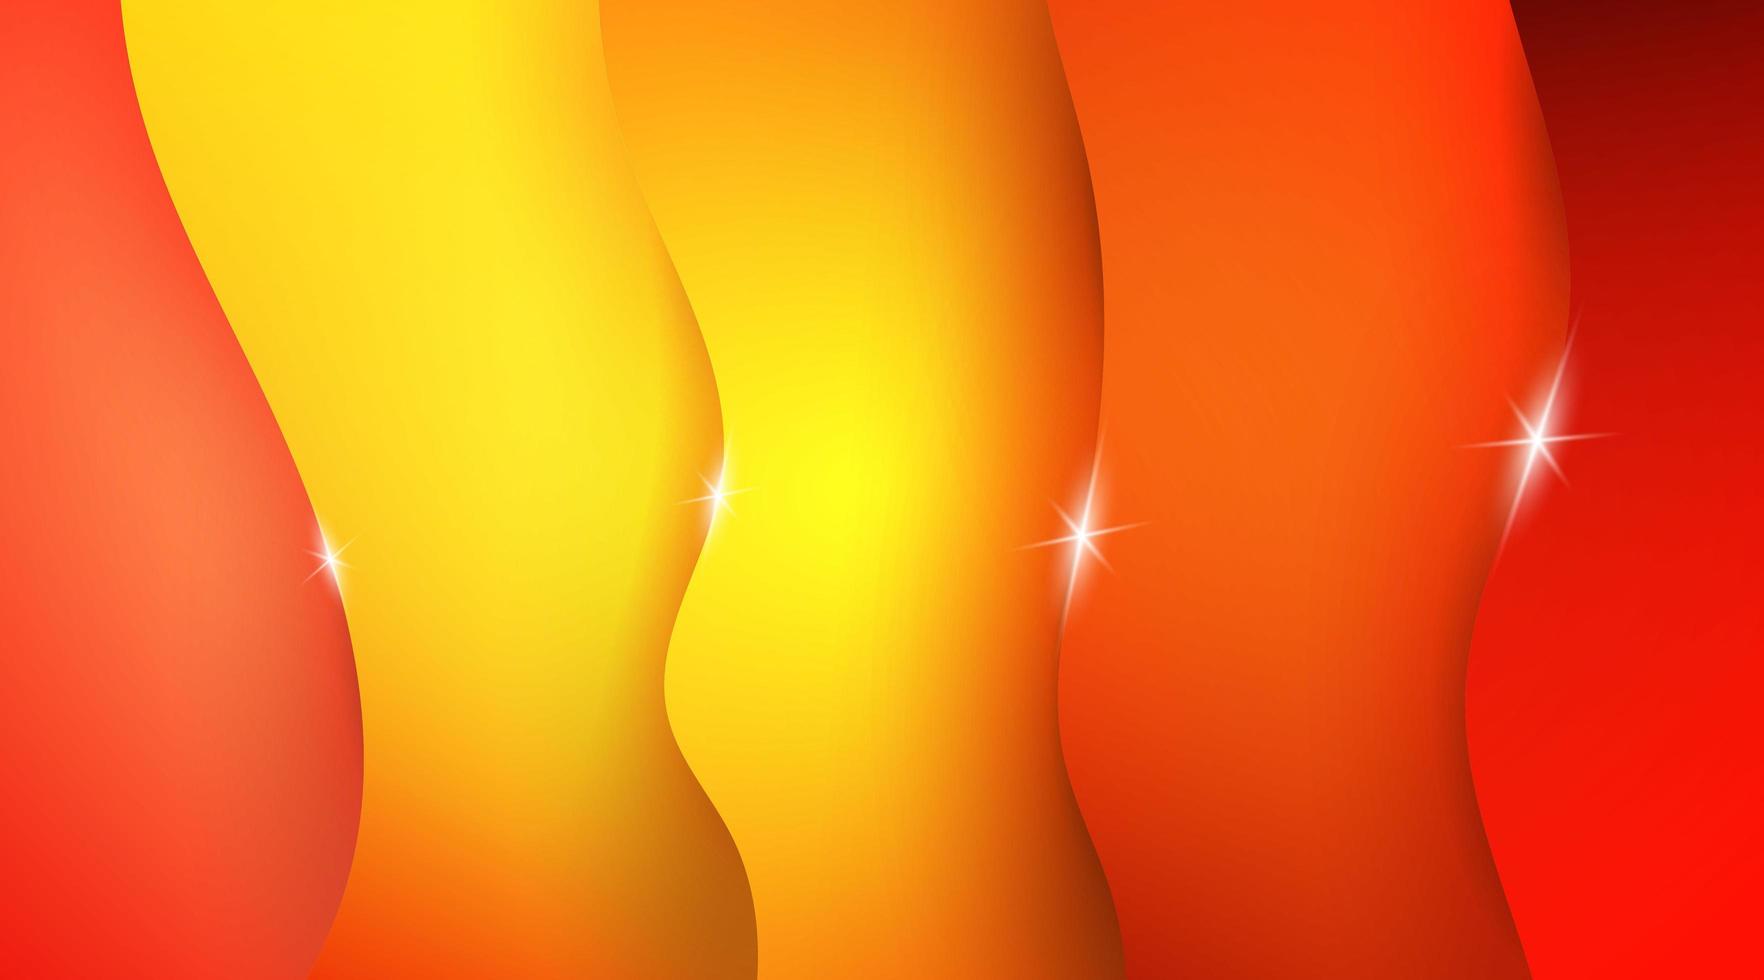 abstrakt orange och gul våg bakgrund vektor